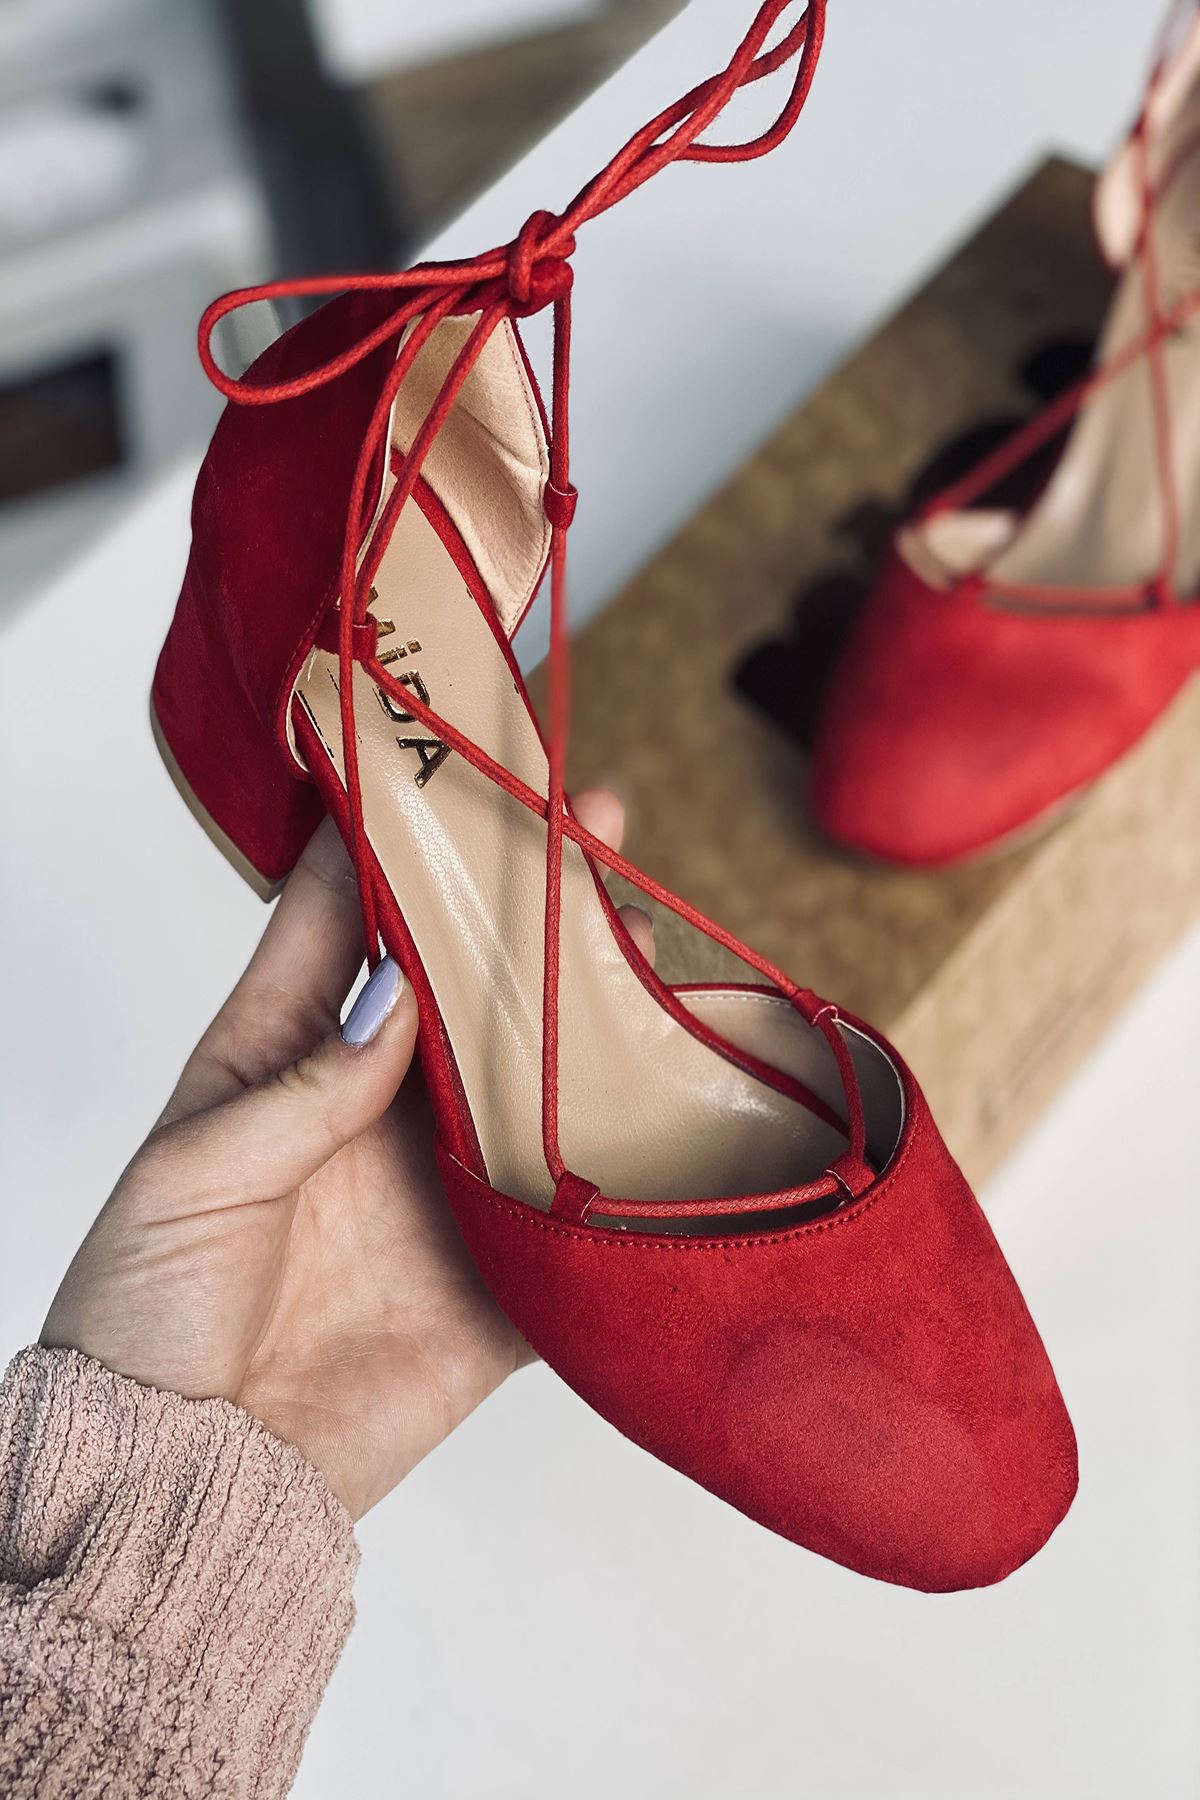 Mida Shoes Y203 Kırmızı Süet Topuklu Ayakkabı